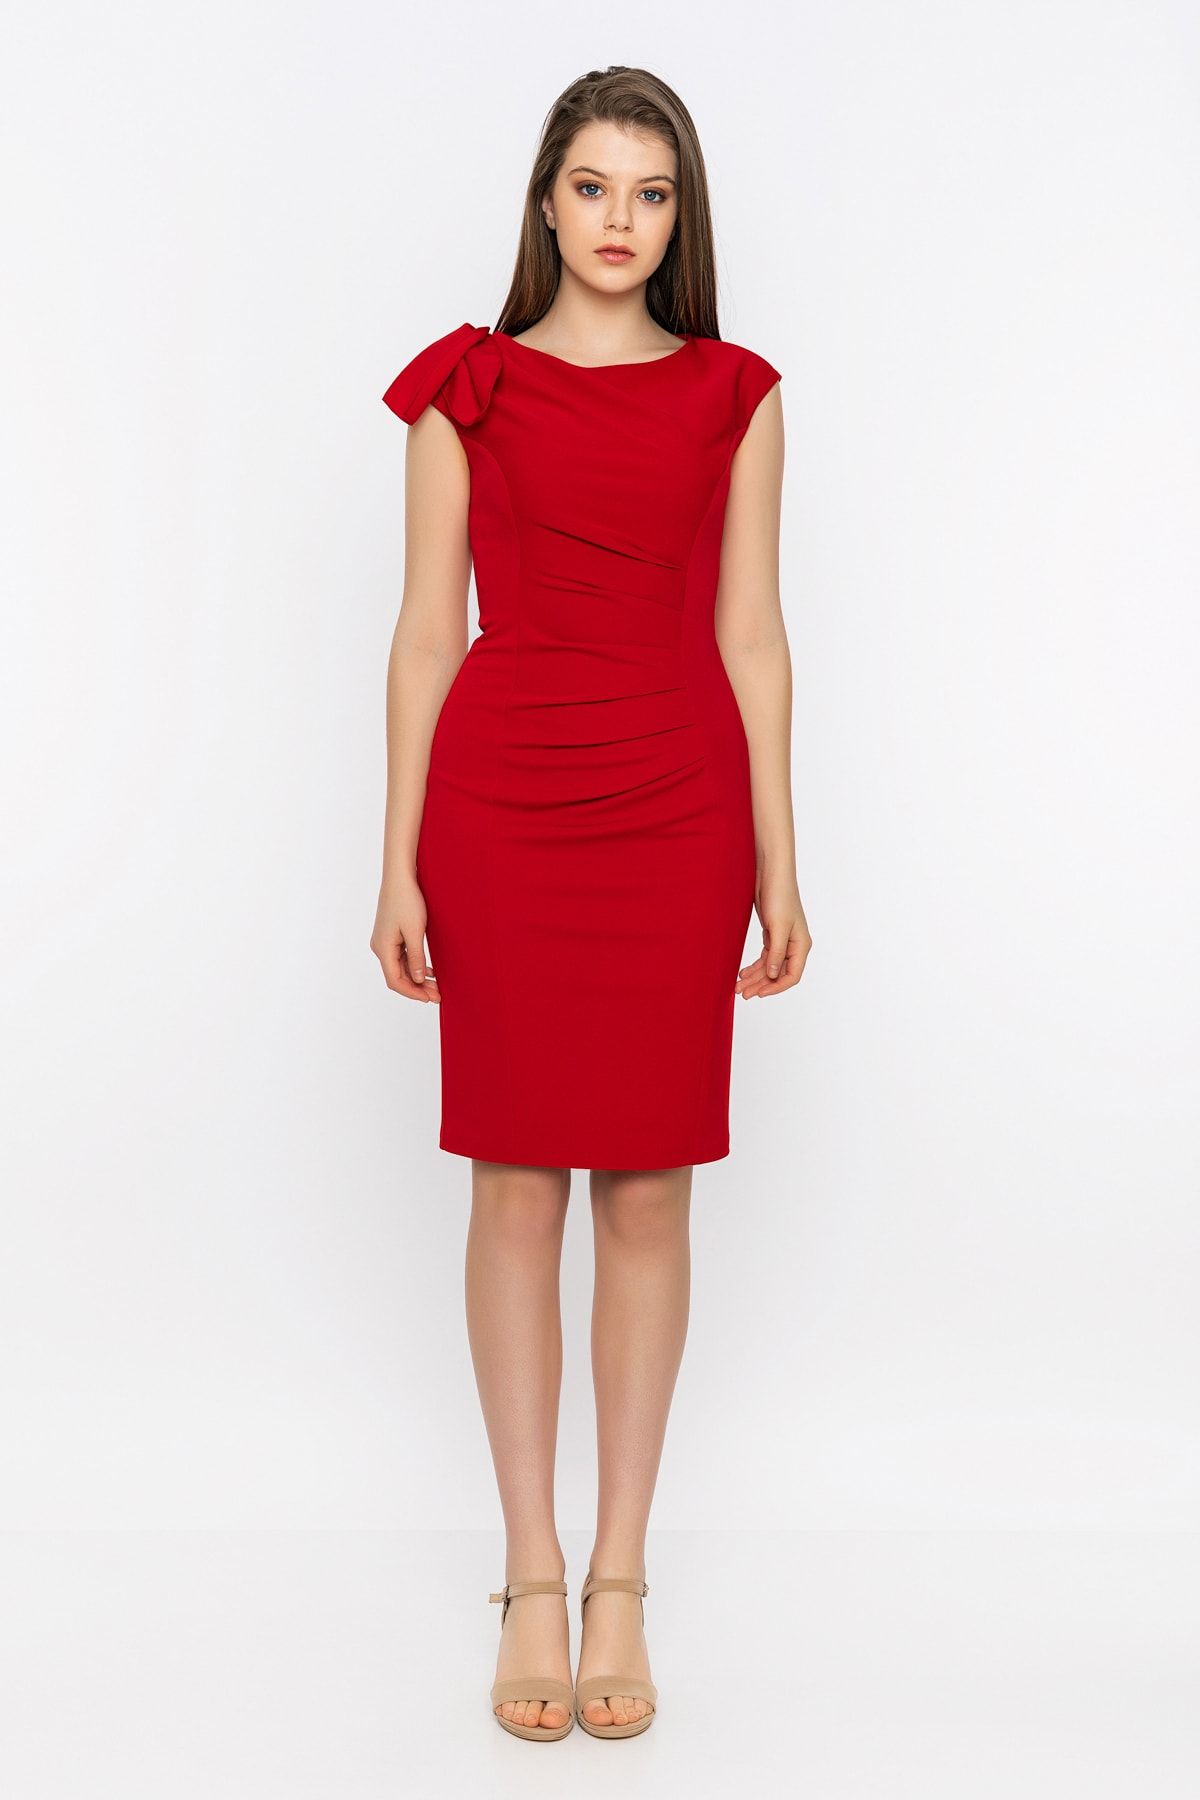 INVIDIA Tek Omuz Fırfırlı Gizli Fermuarlı Yırtmaçlı Kırmızı Elbise